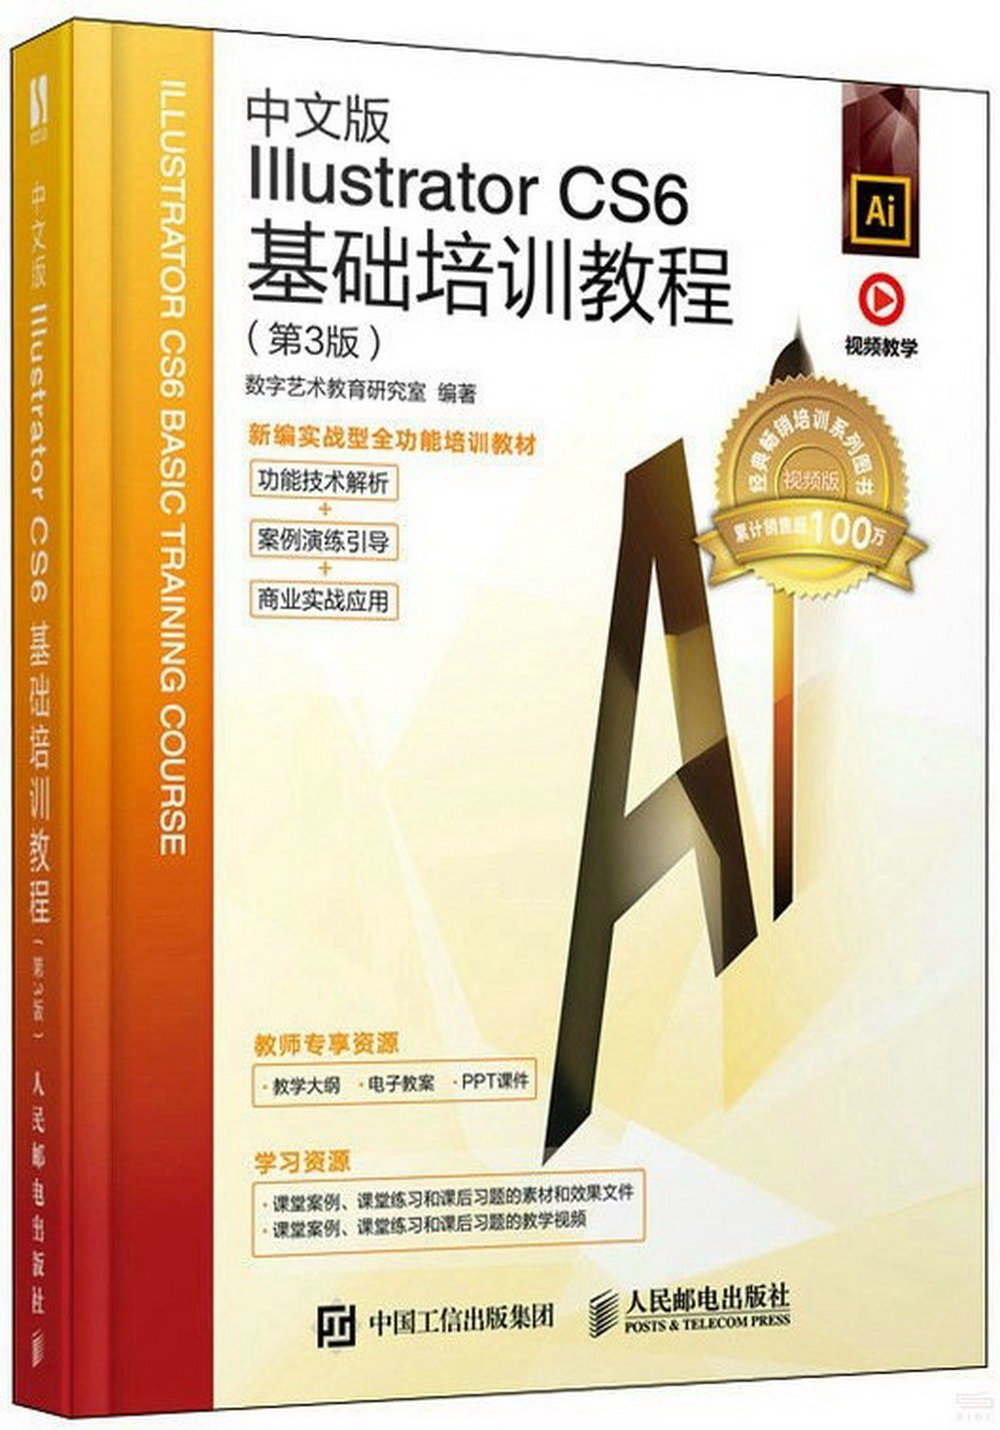 中文版Illustrator CS6基礎培訓教程(第3版)